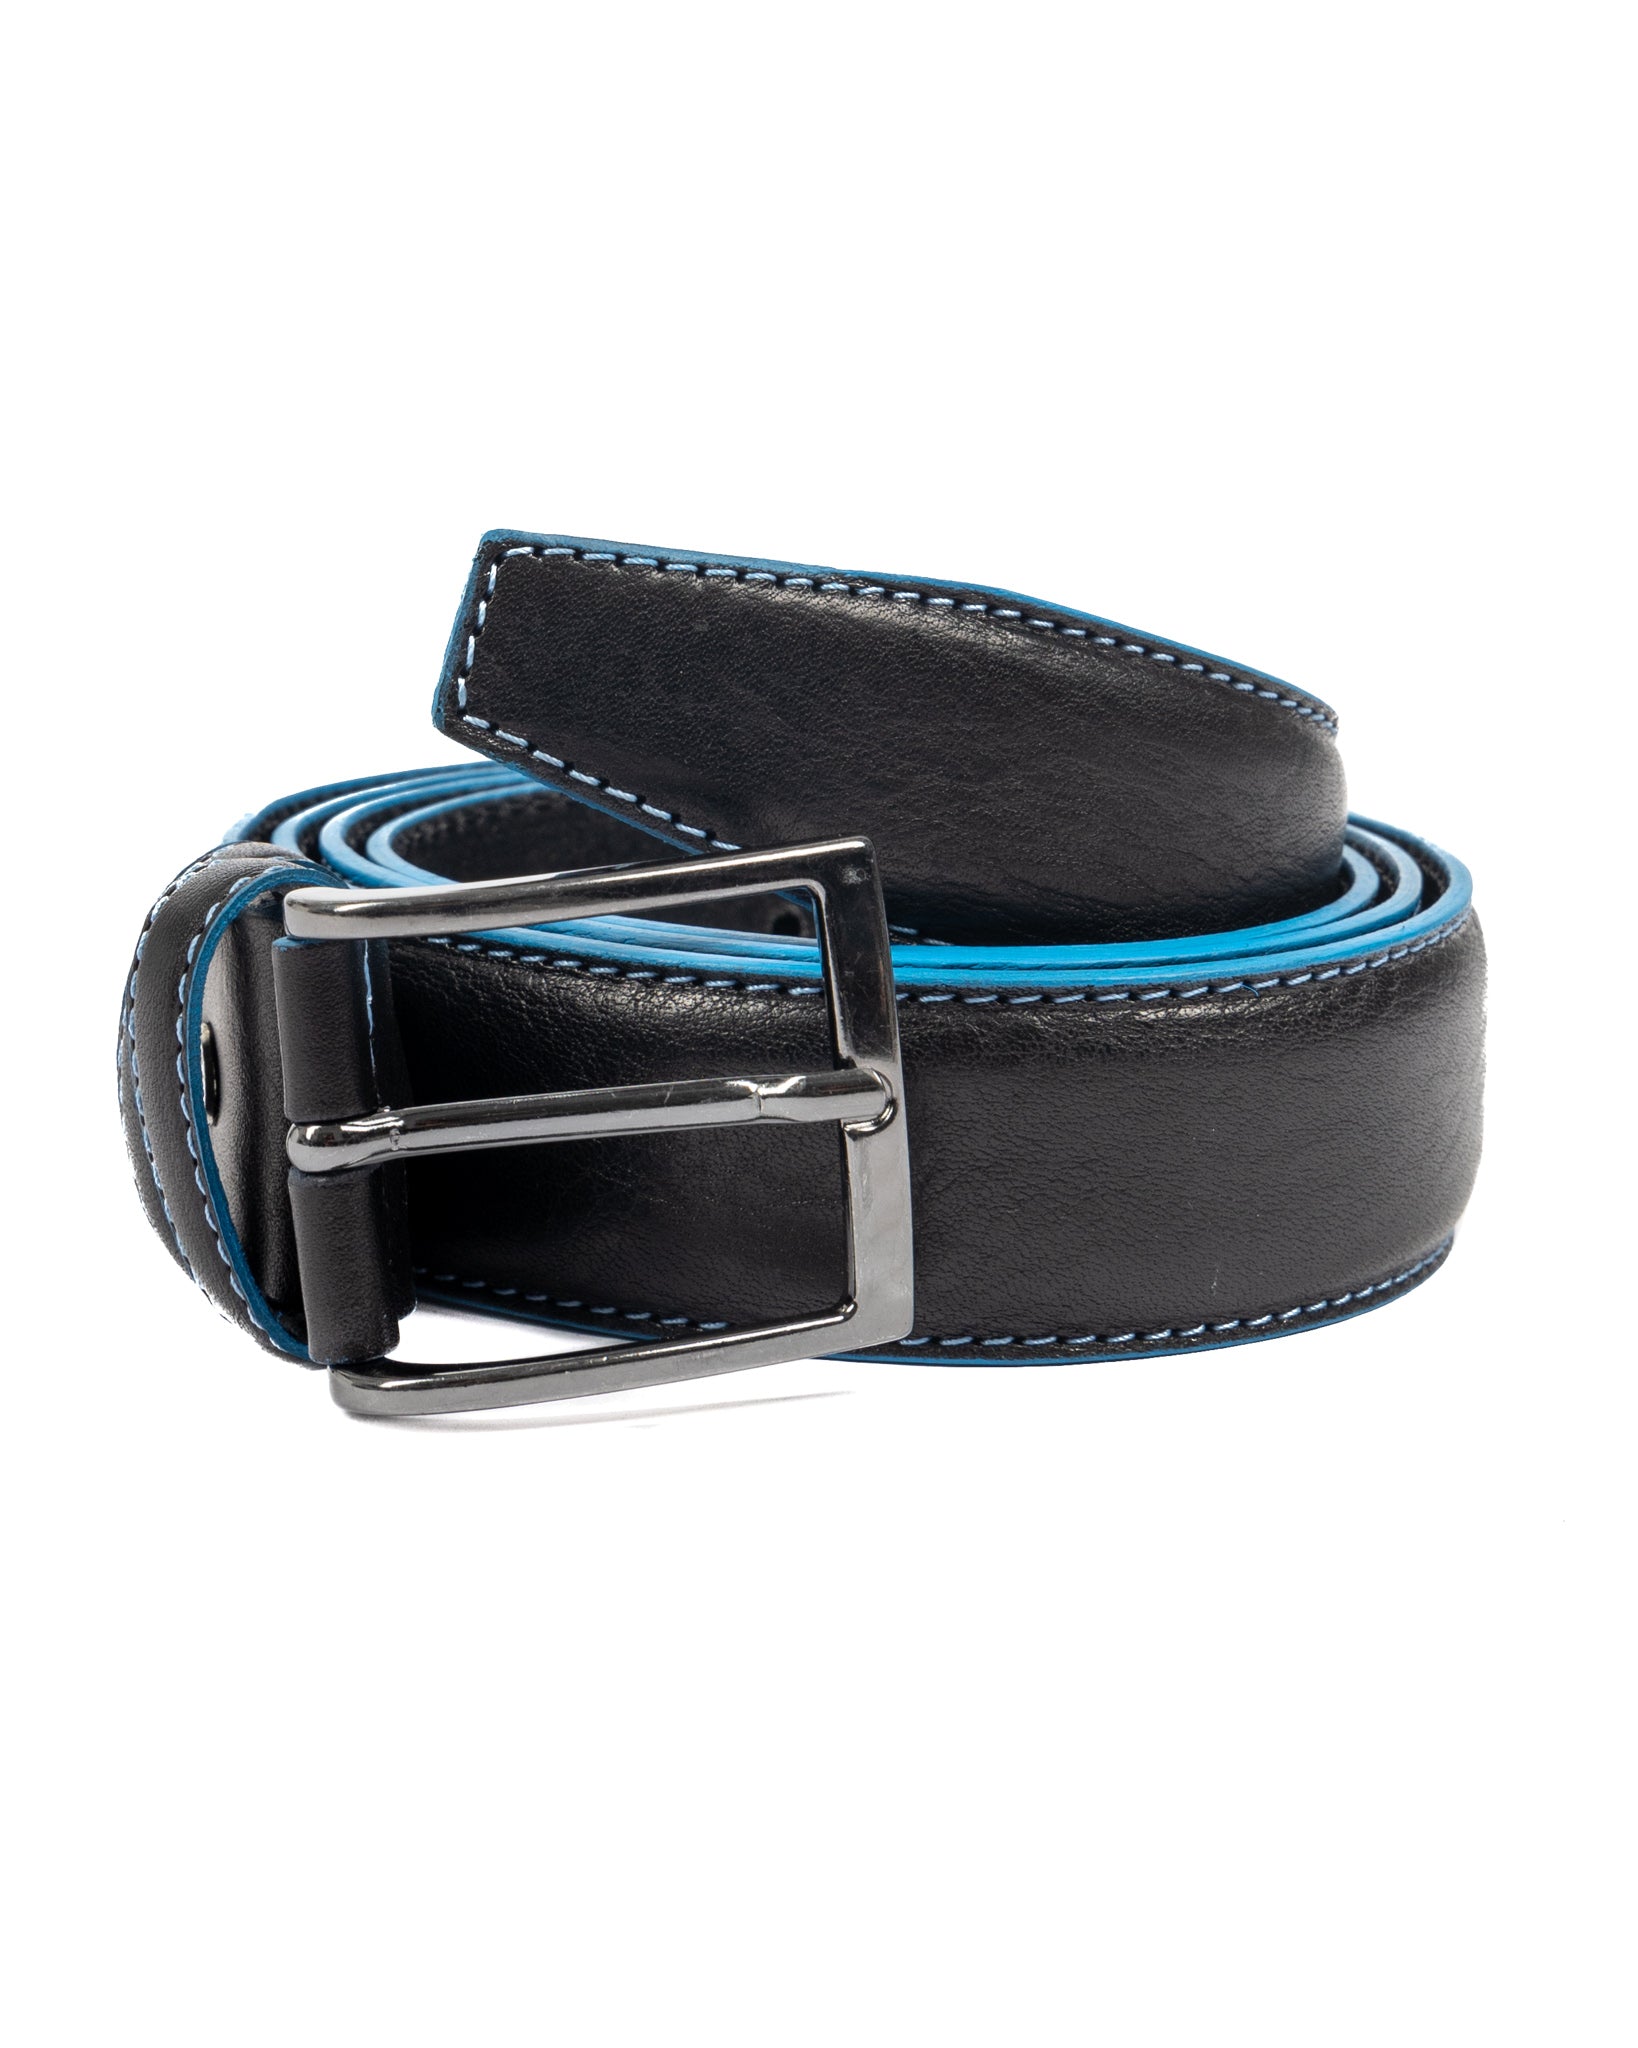 Pienza - ceinture en cuir noir avec surpiqûres contrastées